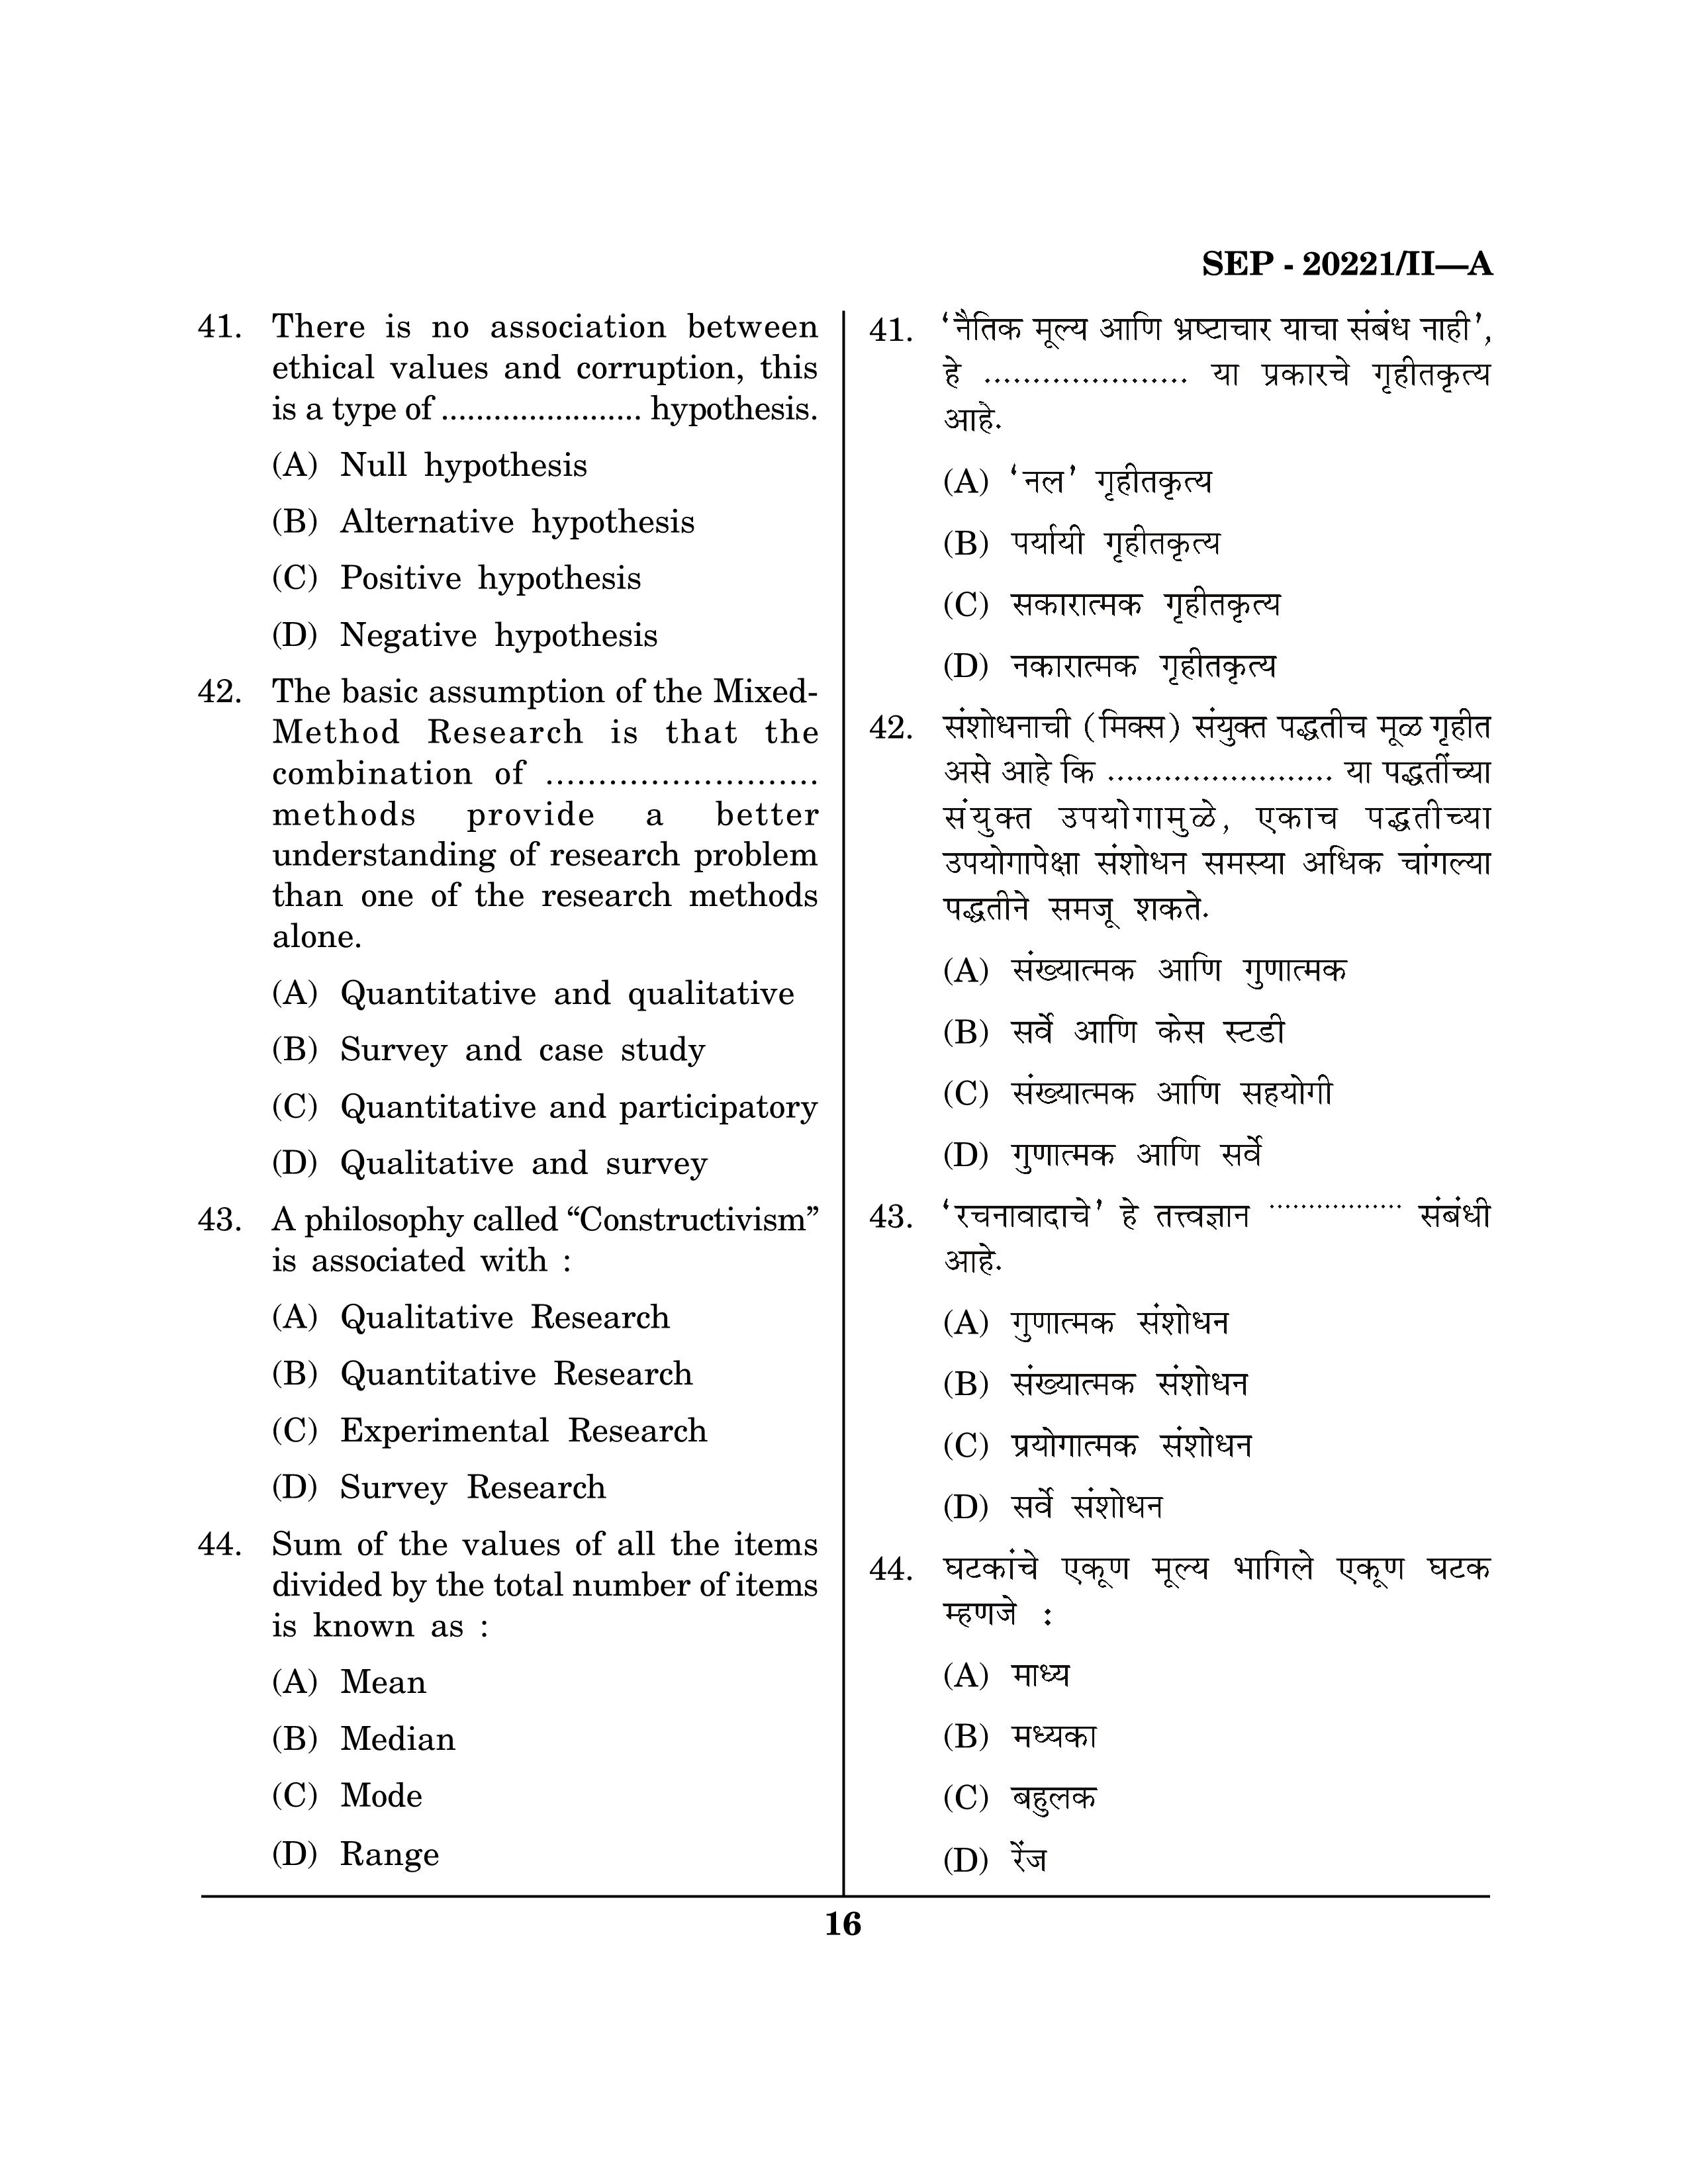 Maharashtra SET Social Work Exam Question Paper September 2021 15